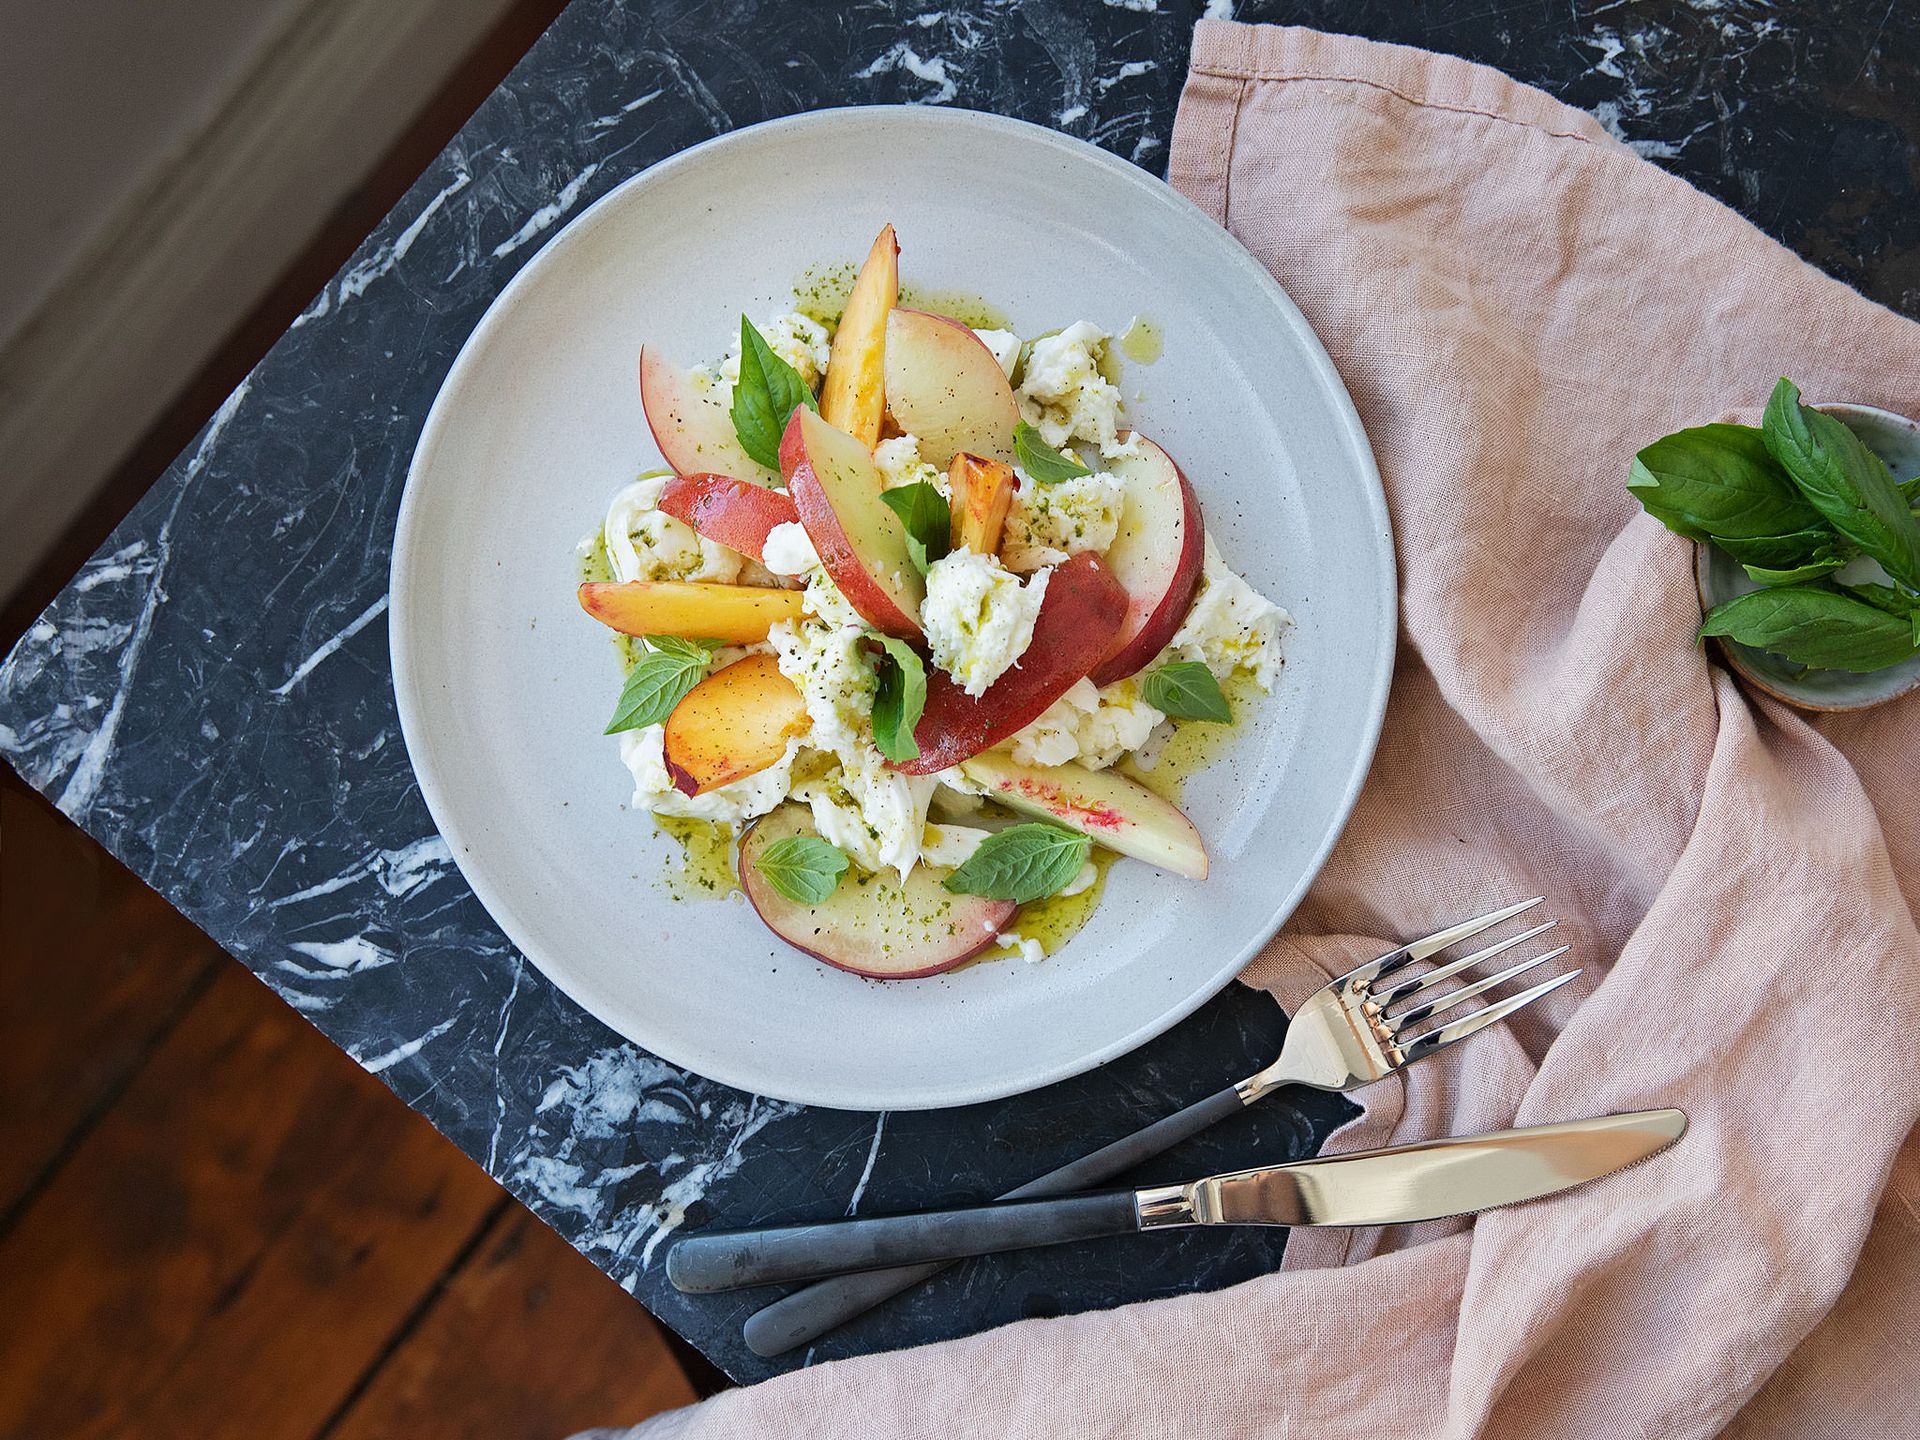 Peach Caprese salad with basil oil